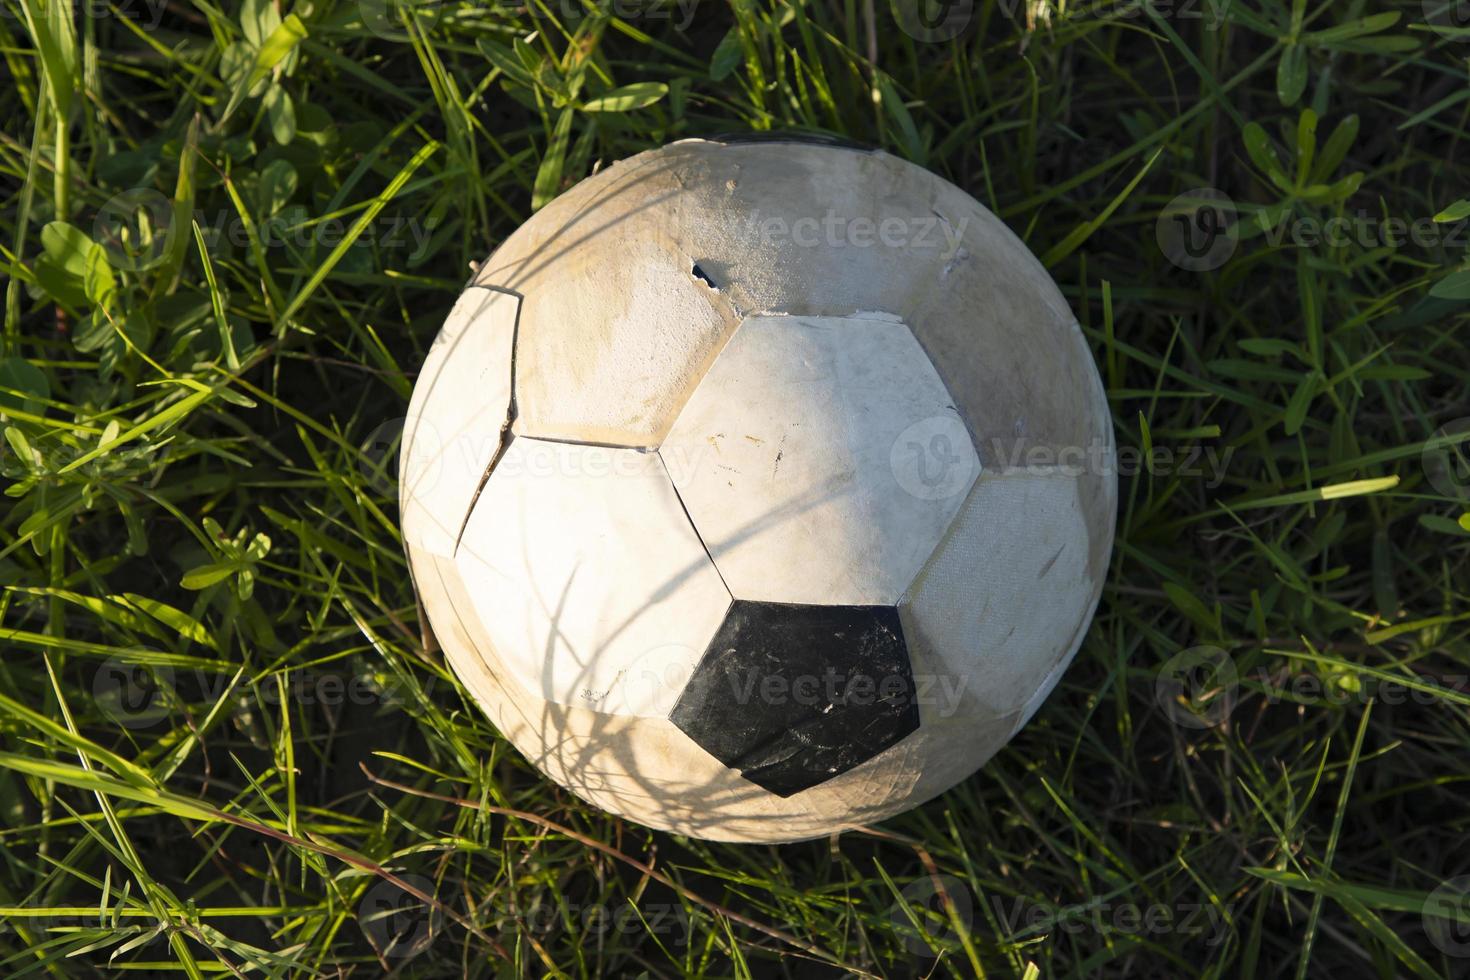 een oude voetbal ligt in het gras, close-up foto